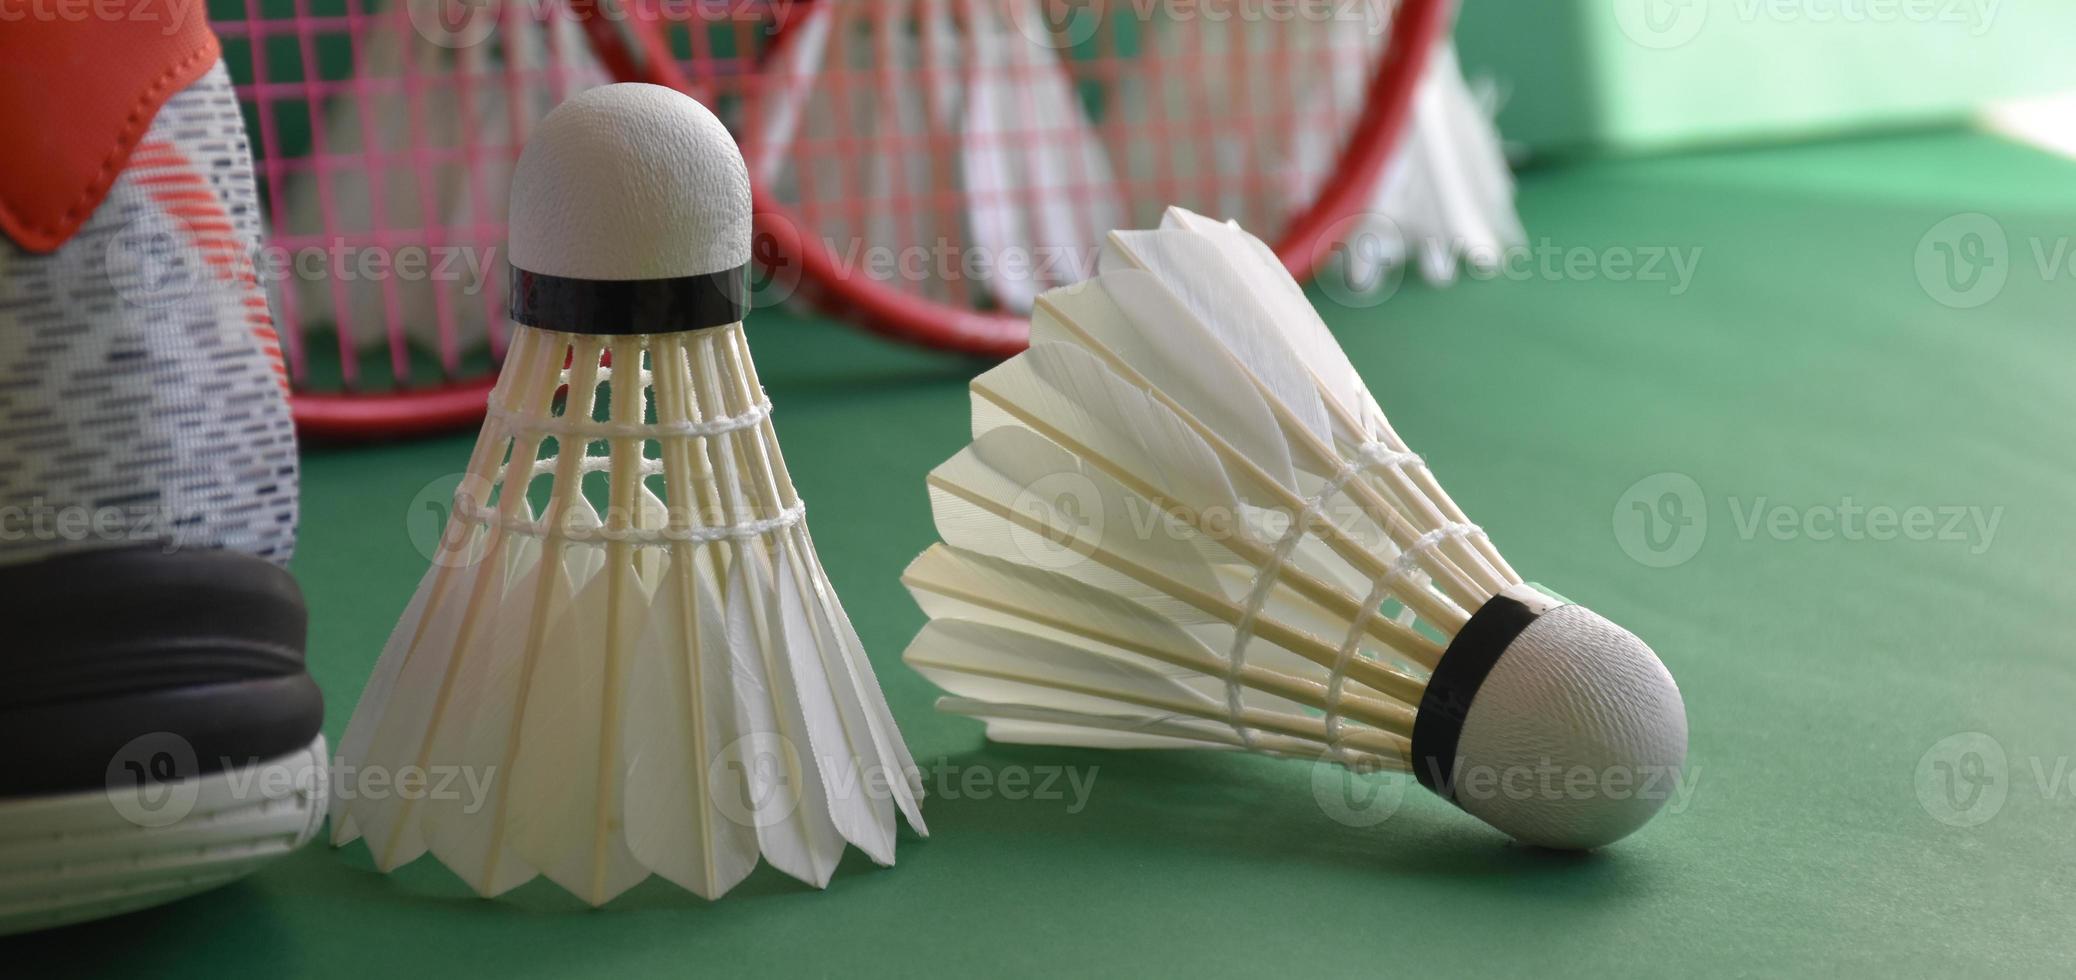 equipamentos de esporte de badminton no chão verde de petecas de quadra de badminton, raquetes, sapatos, foco seletivo em petecas, esporte de badminton jogando amante em todo o conceito do mundo. foto